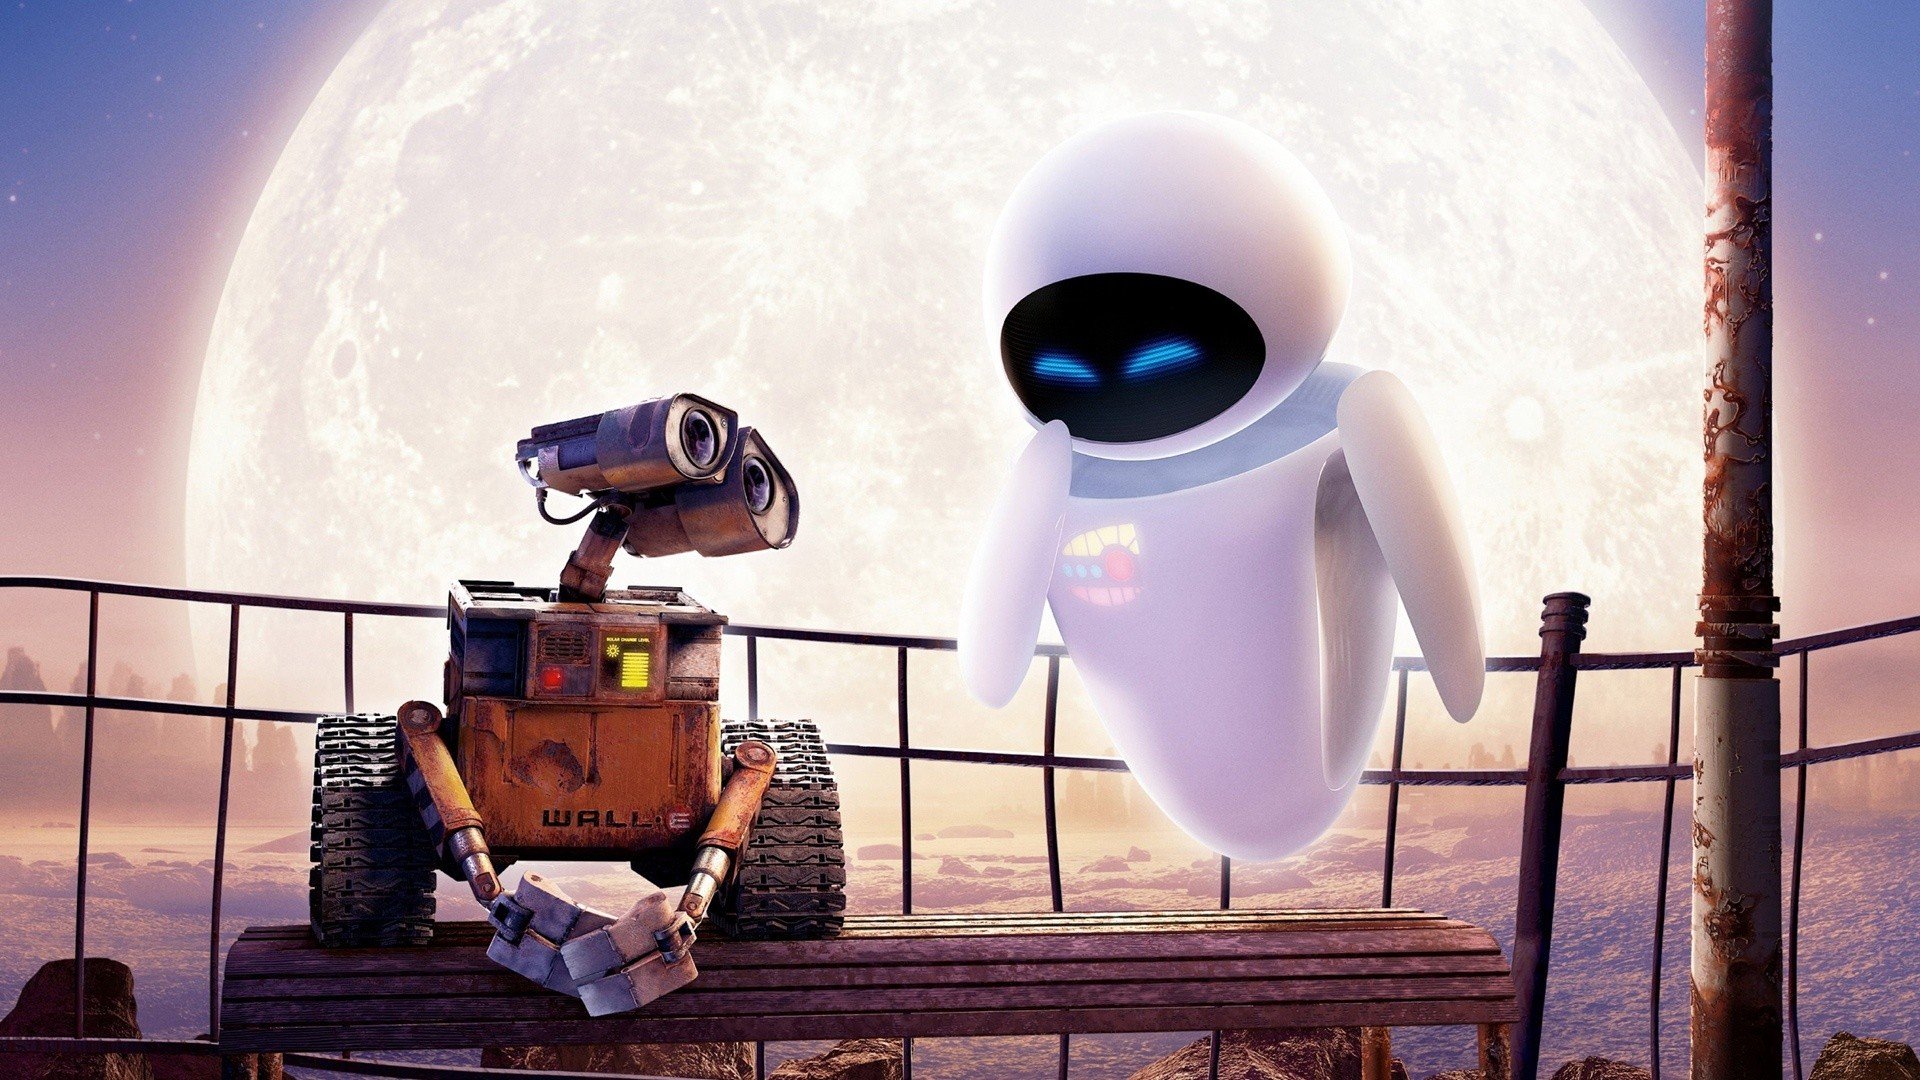 Disney, Disney Pixar, WALL·E, Eva, Moon, Robot Wallpaper